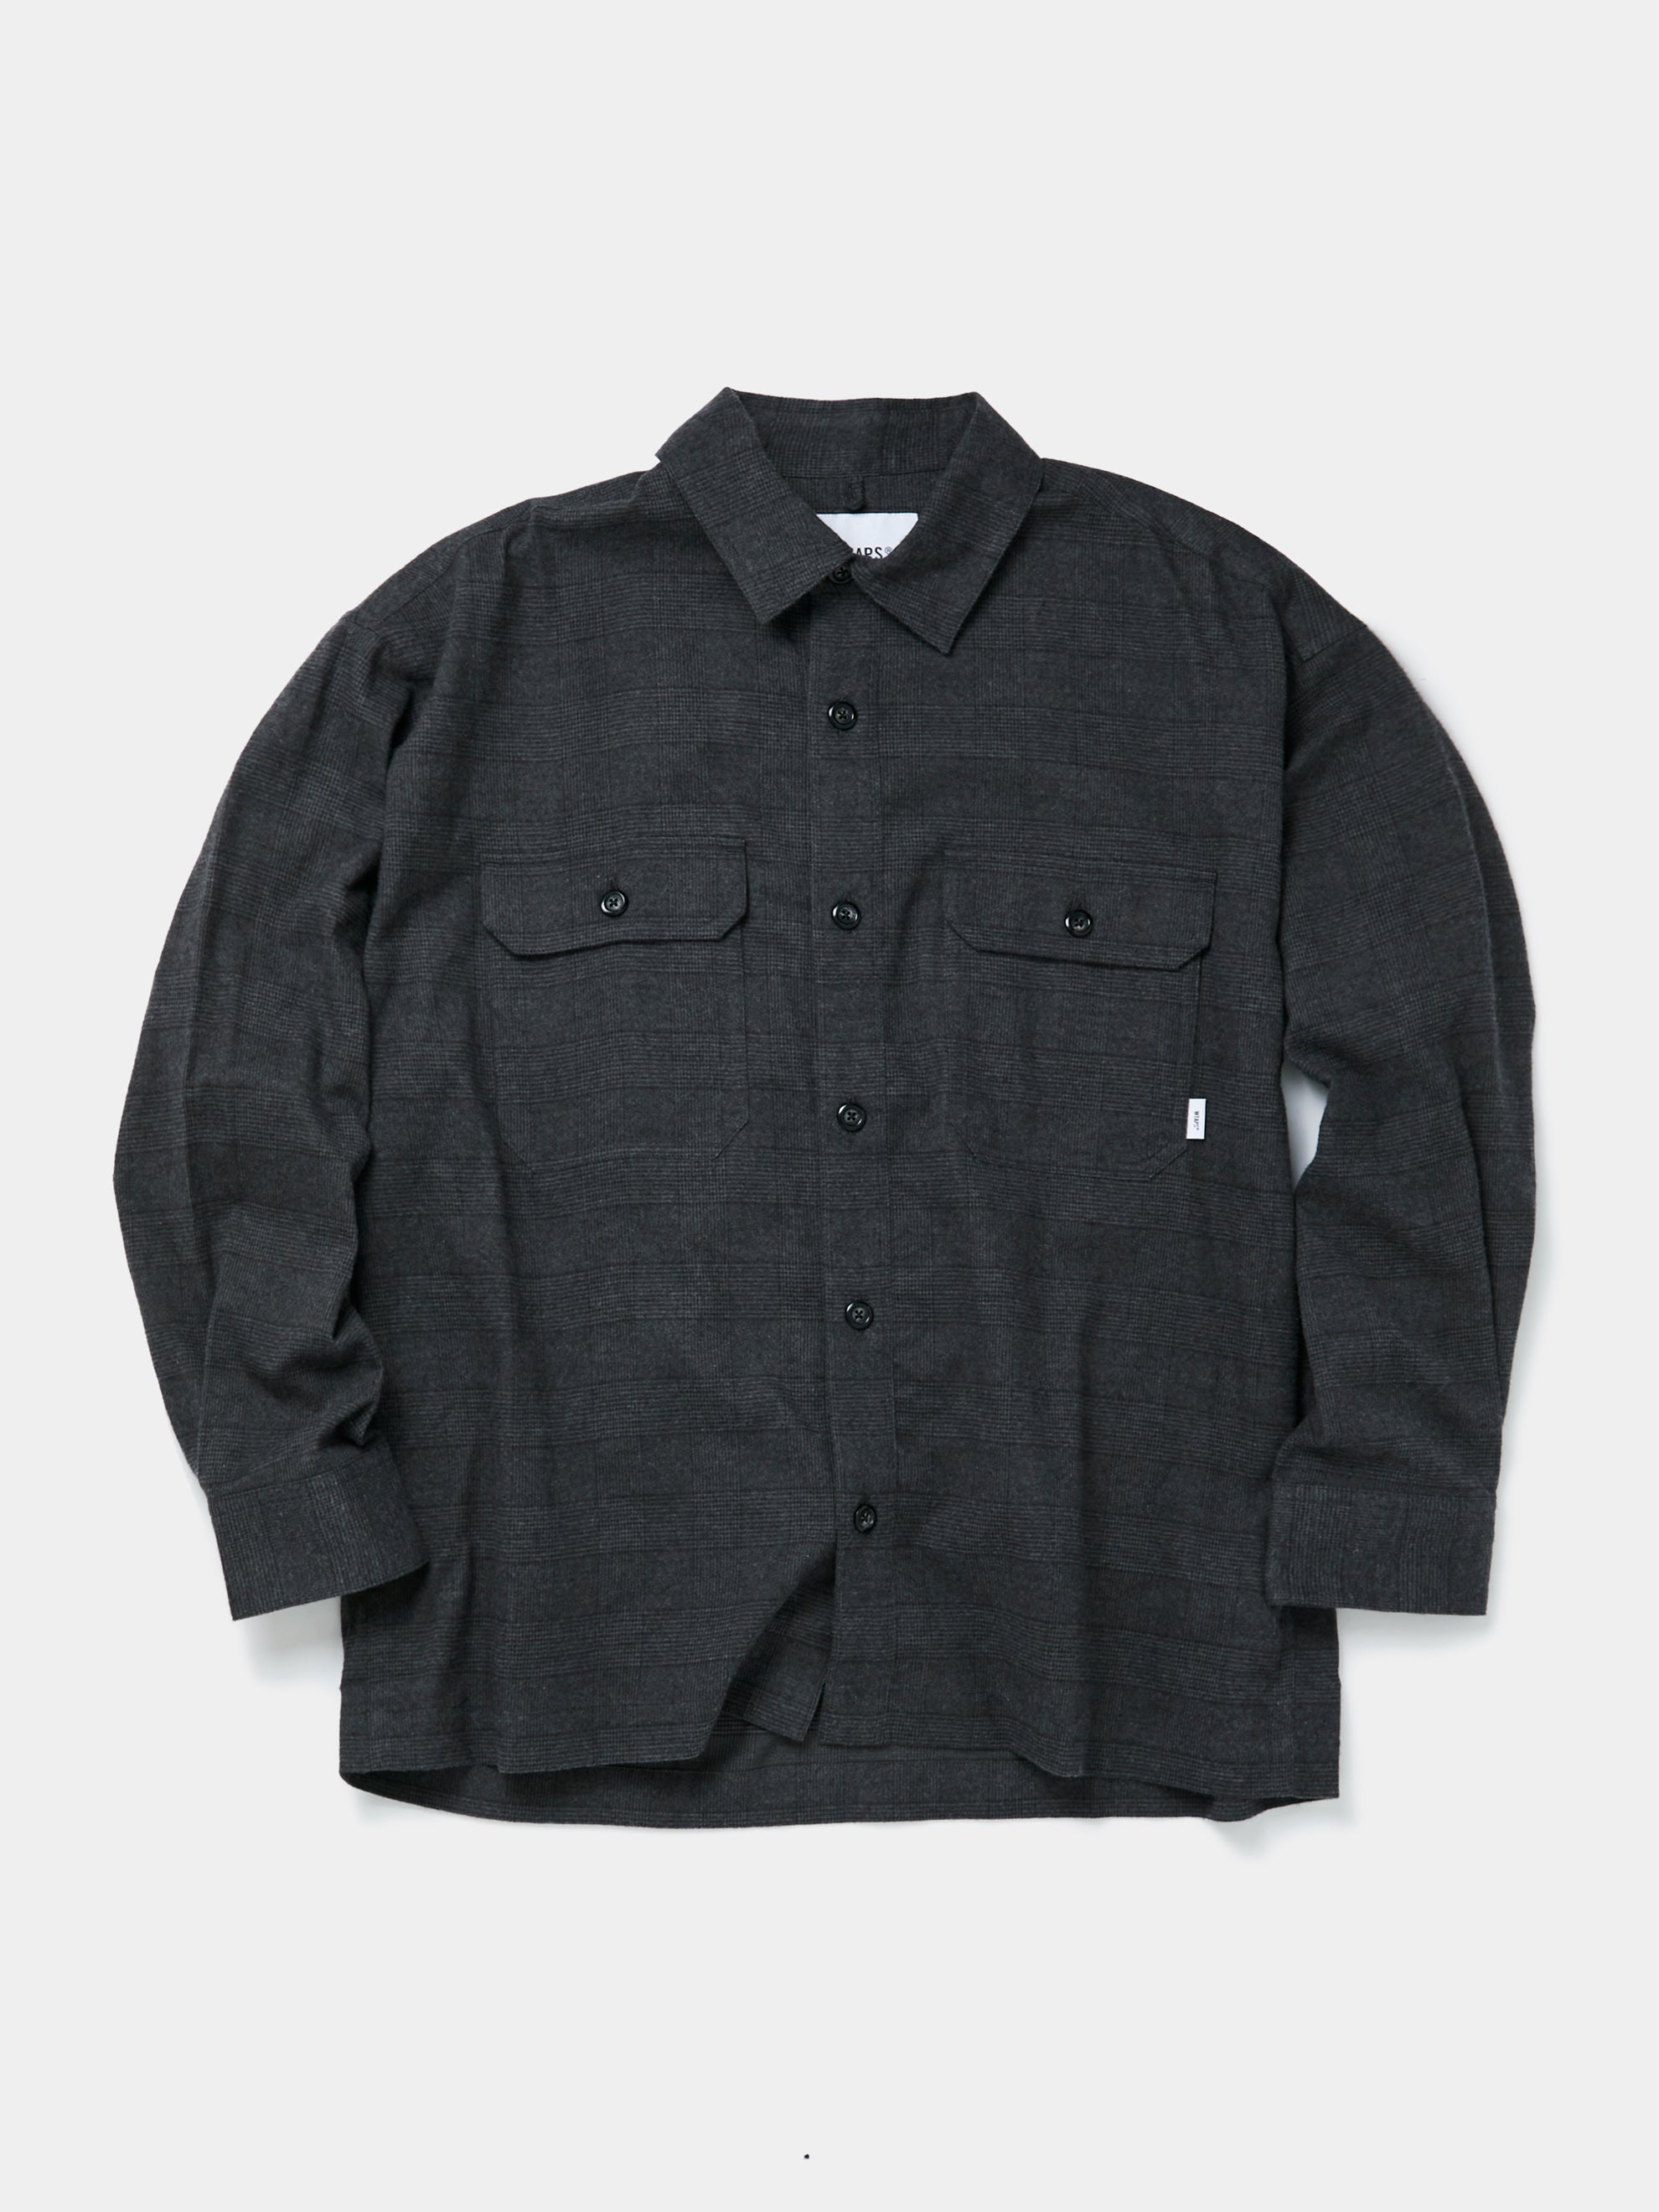 Schott N.Y.C. SH2135 Plaid Cotton Flannel Shirt